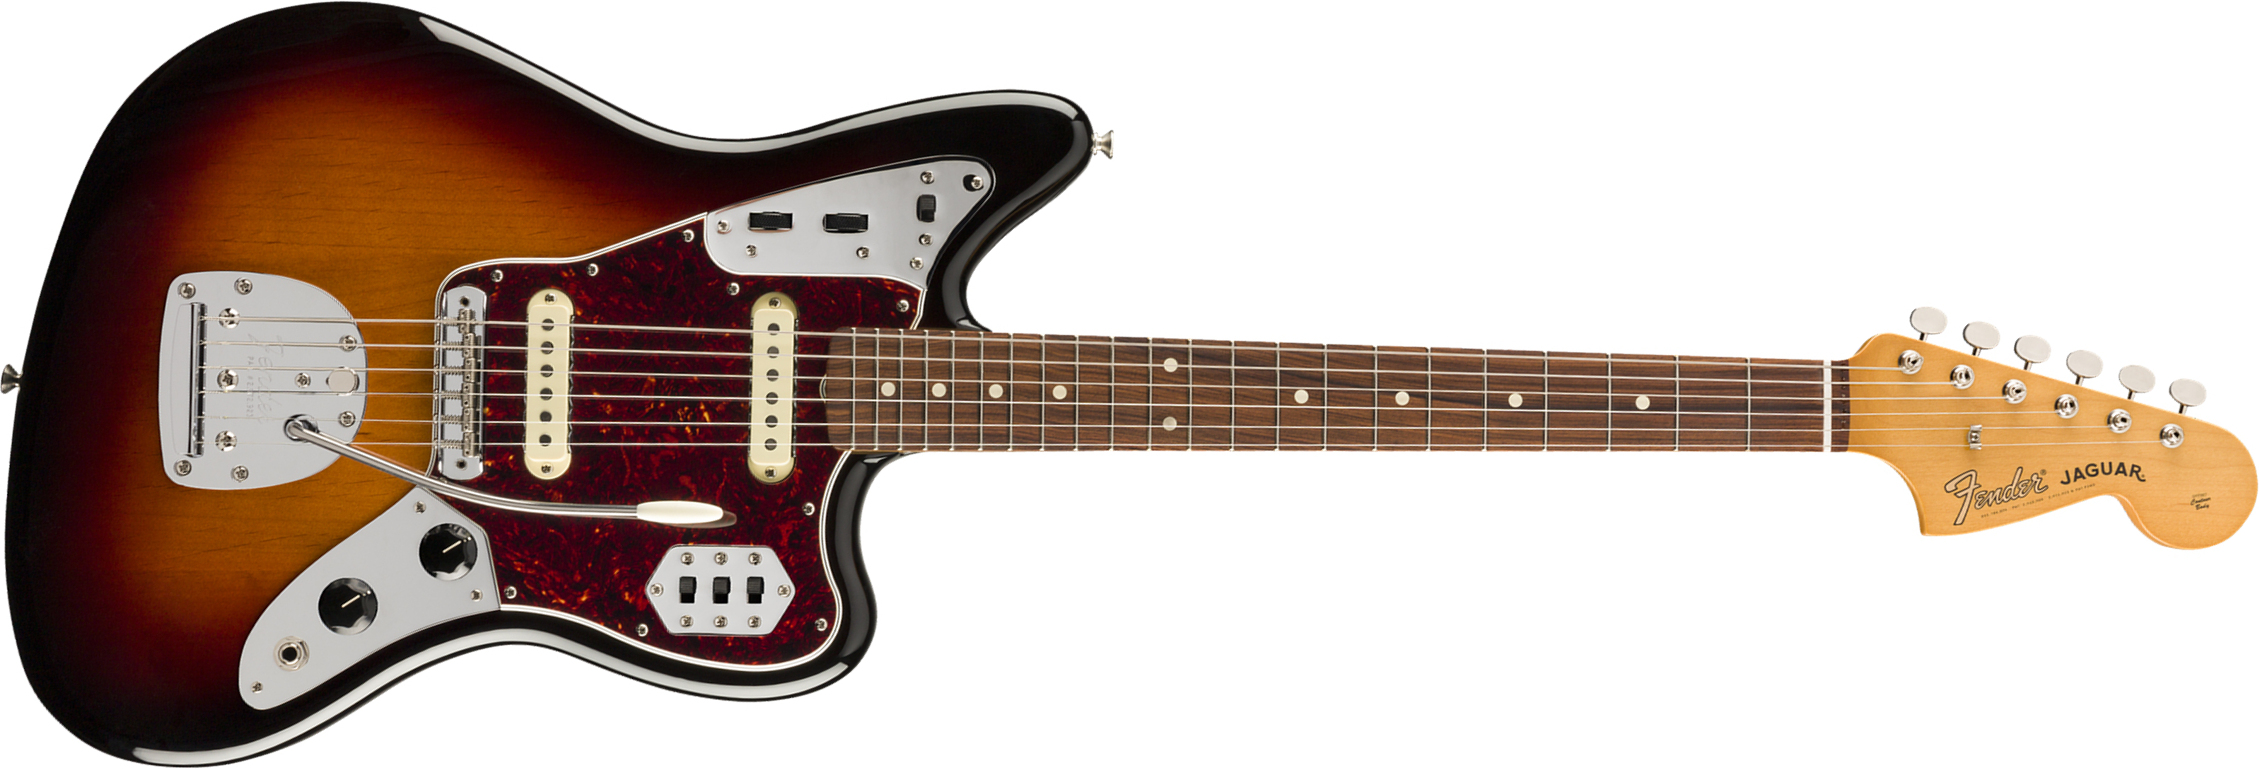 Fender Jaguar 60s Vintera Vintage Mex Pf - 3-color Sunburst - Retro rock electric guitar - Main picture